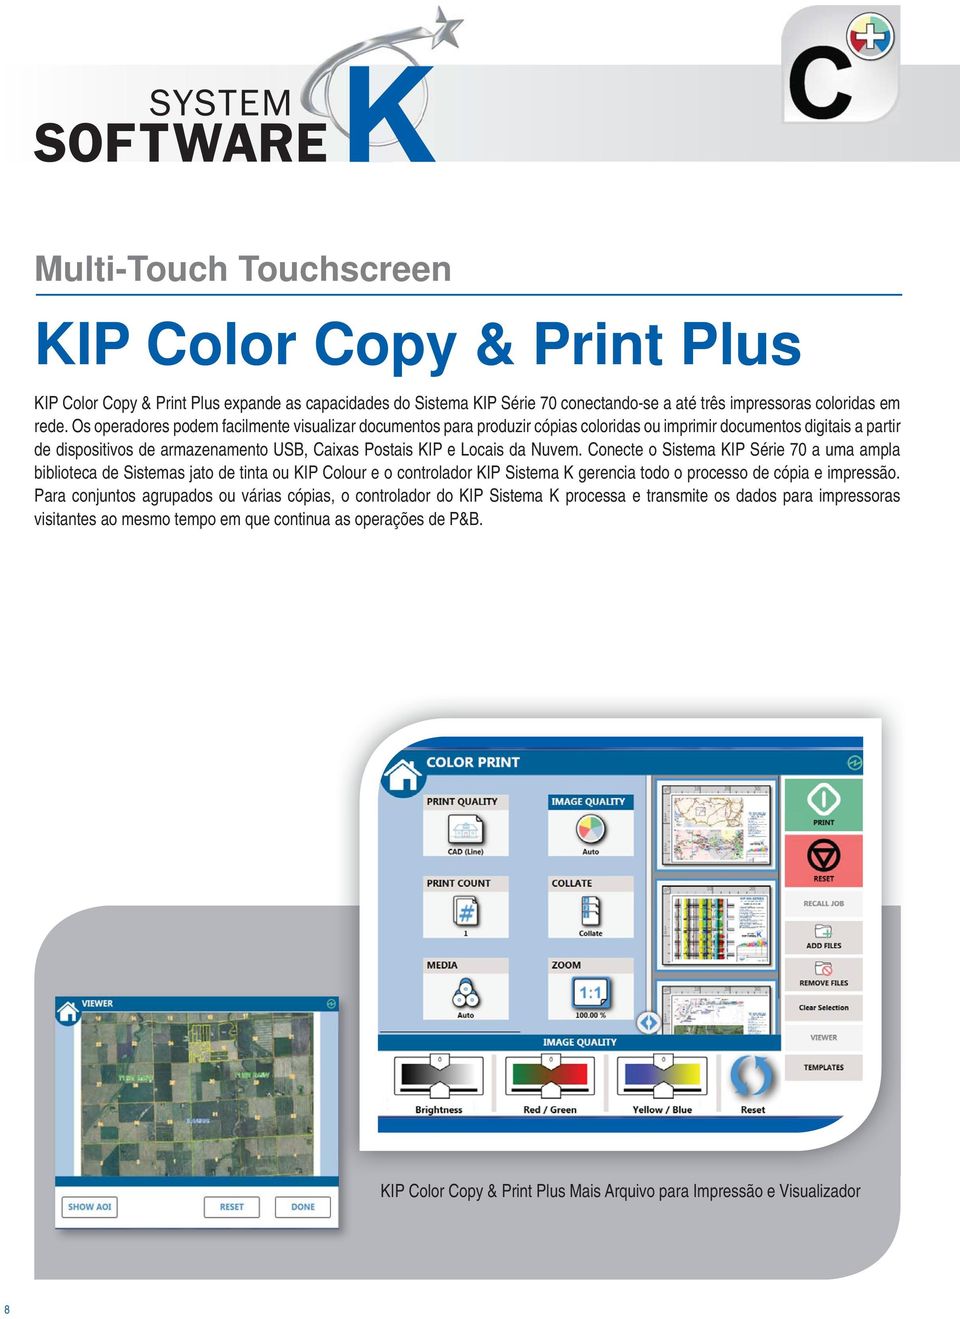 Conecte o Sistema KIP Série 70 a uma ampla biblioteca de Sistemas jato de tinta ou KIP Colour e o controlador KIP Sistema K gerencia todo o processo de cópia e impressão.